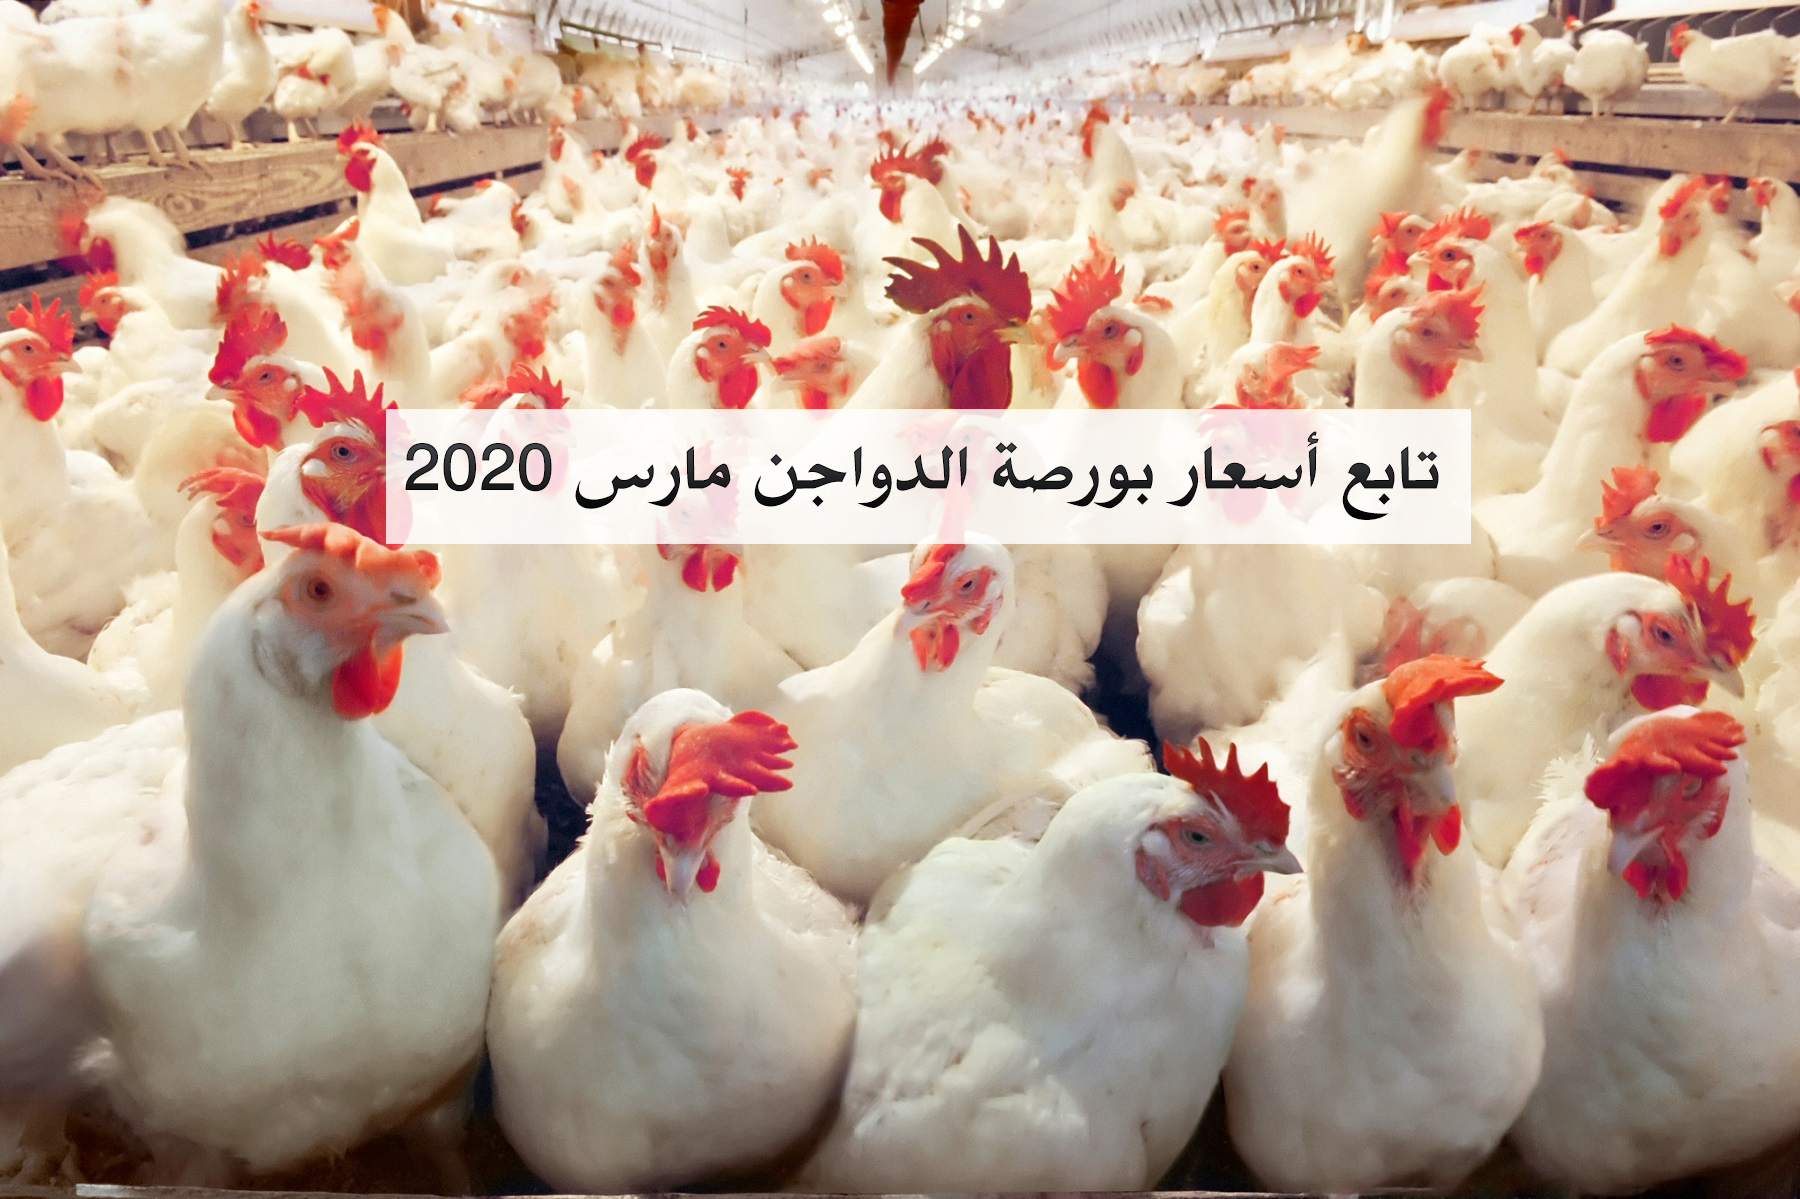 أسعار بورصة الدواجن اليوم الاثنين 2 مارس 2020 في مصر